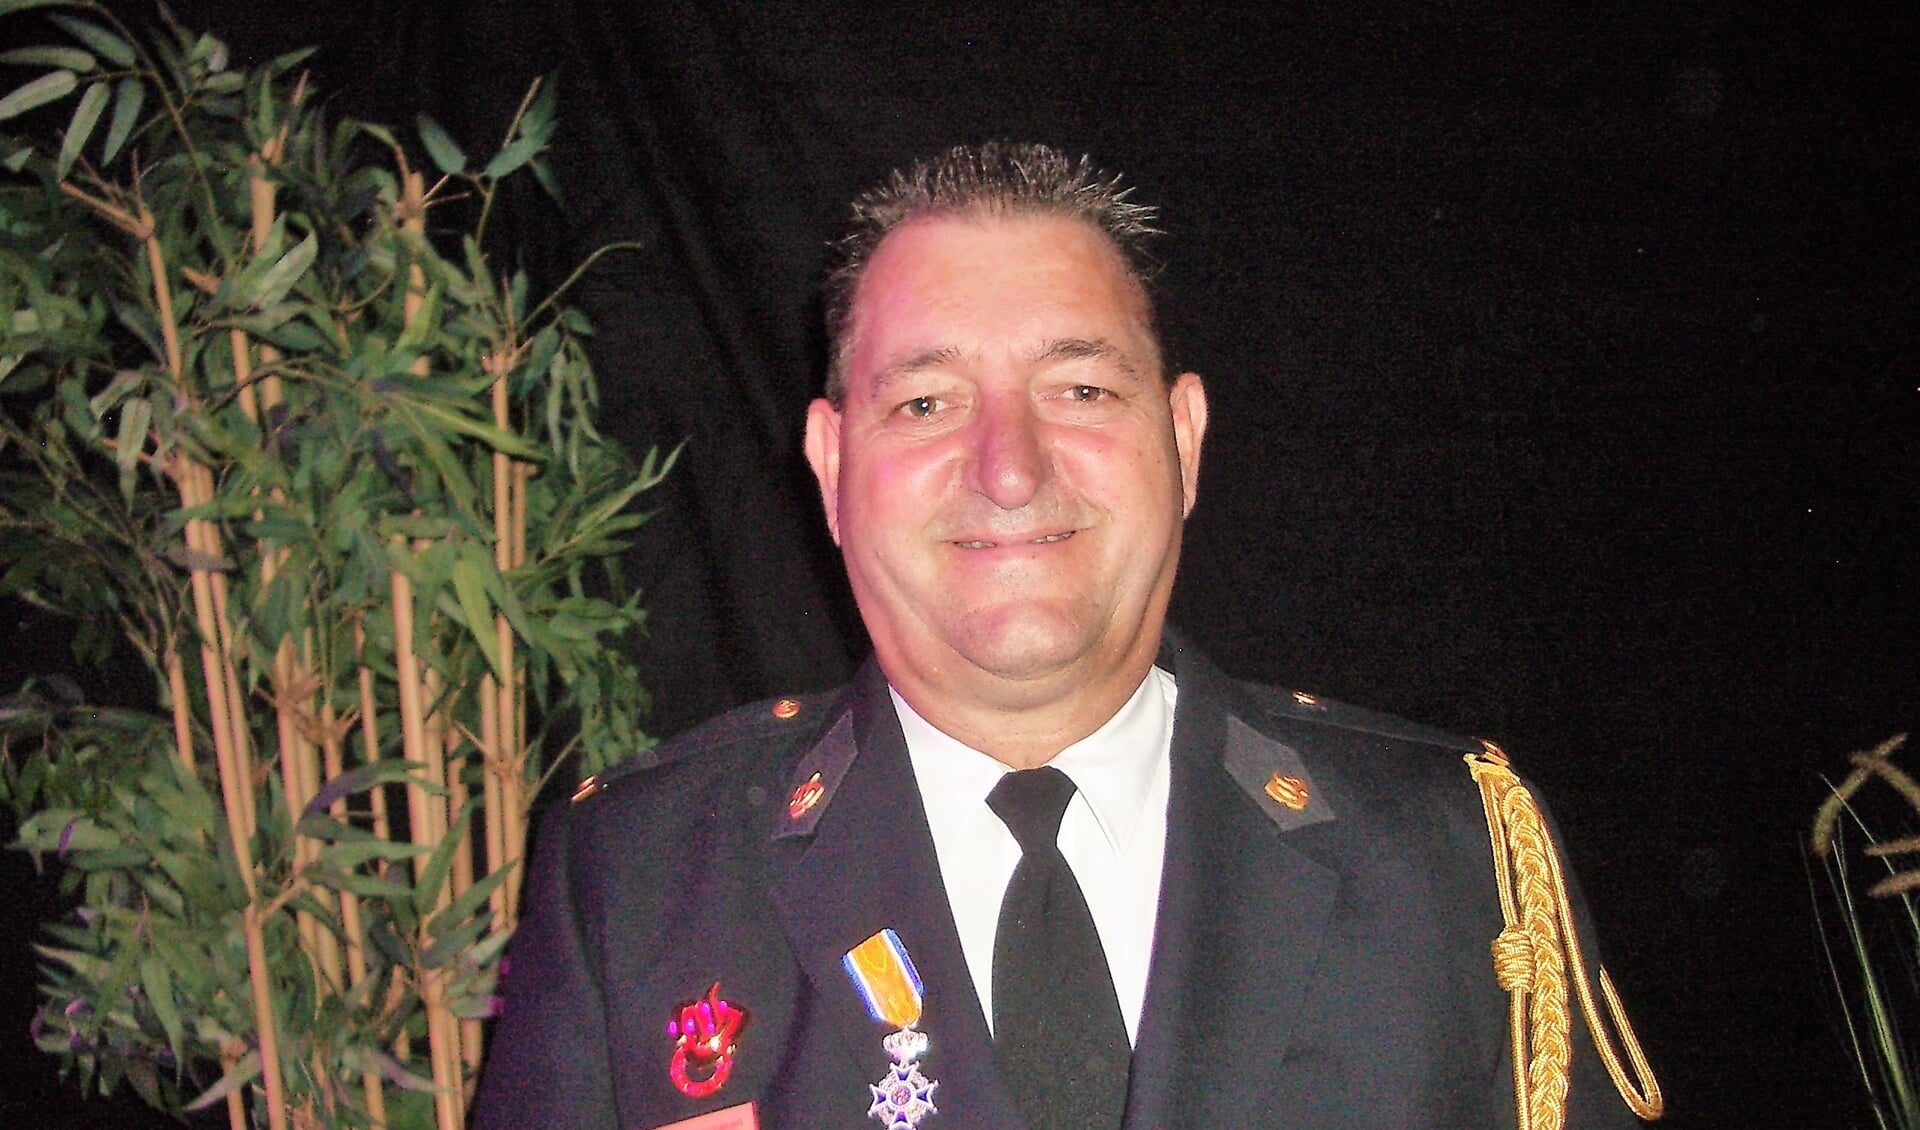 In de brandweerkazerne van Standdaarbuiten kreeg Bart Christianen door loco burgemeester Thomas Zwiers de versierselen opgespeld die horen bij het lidmaatschap in de Orde van Oranje Nassau. FOTO TIES STEEHOUWER